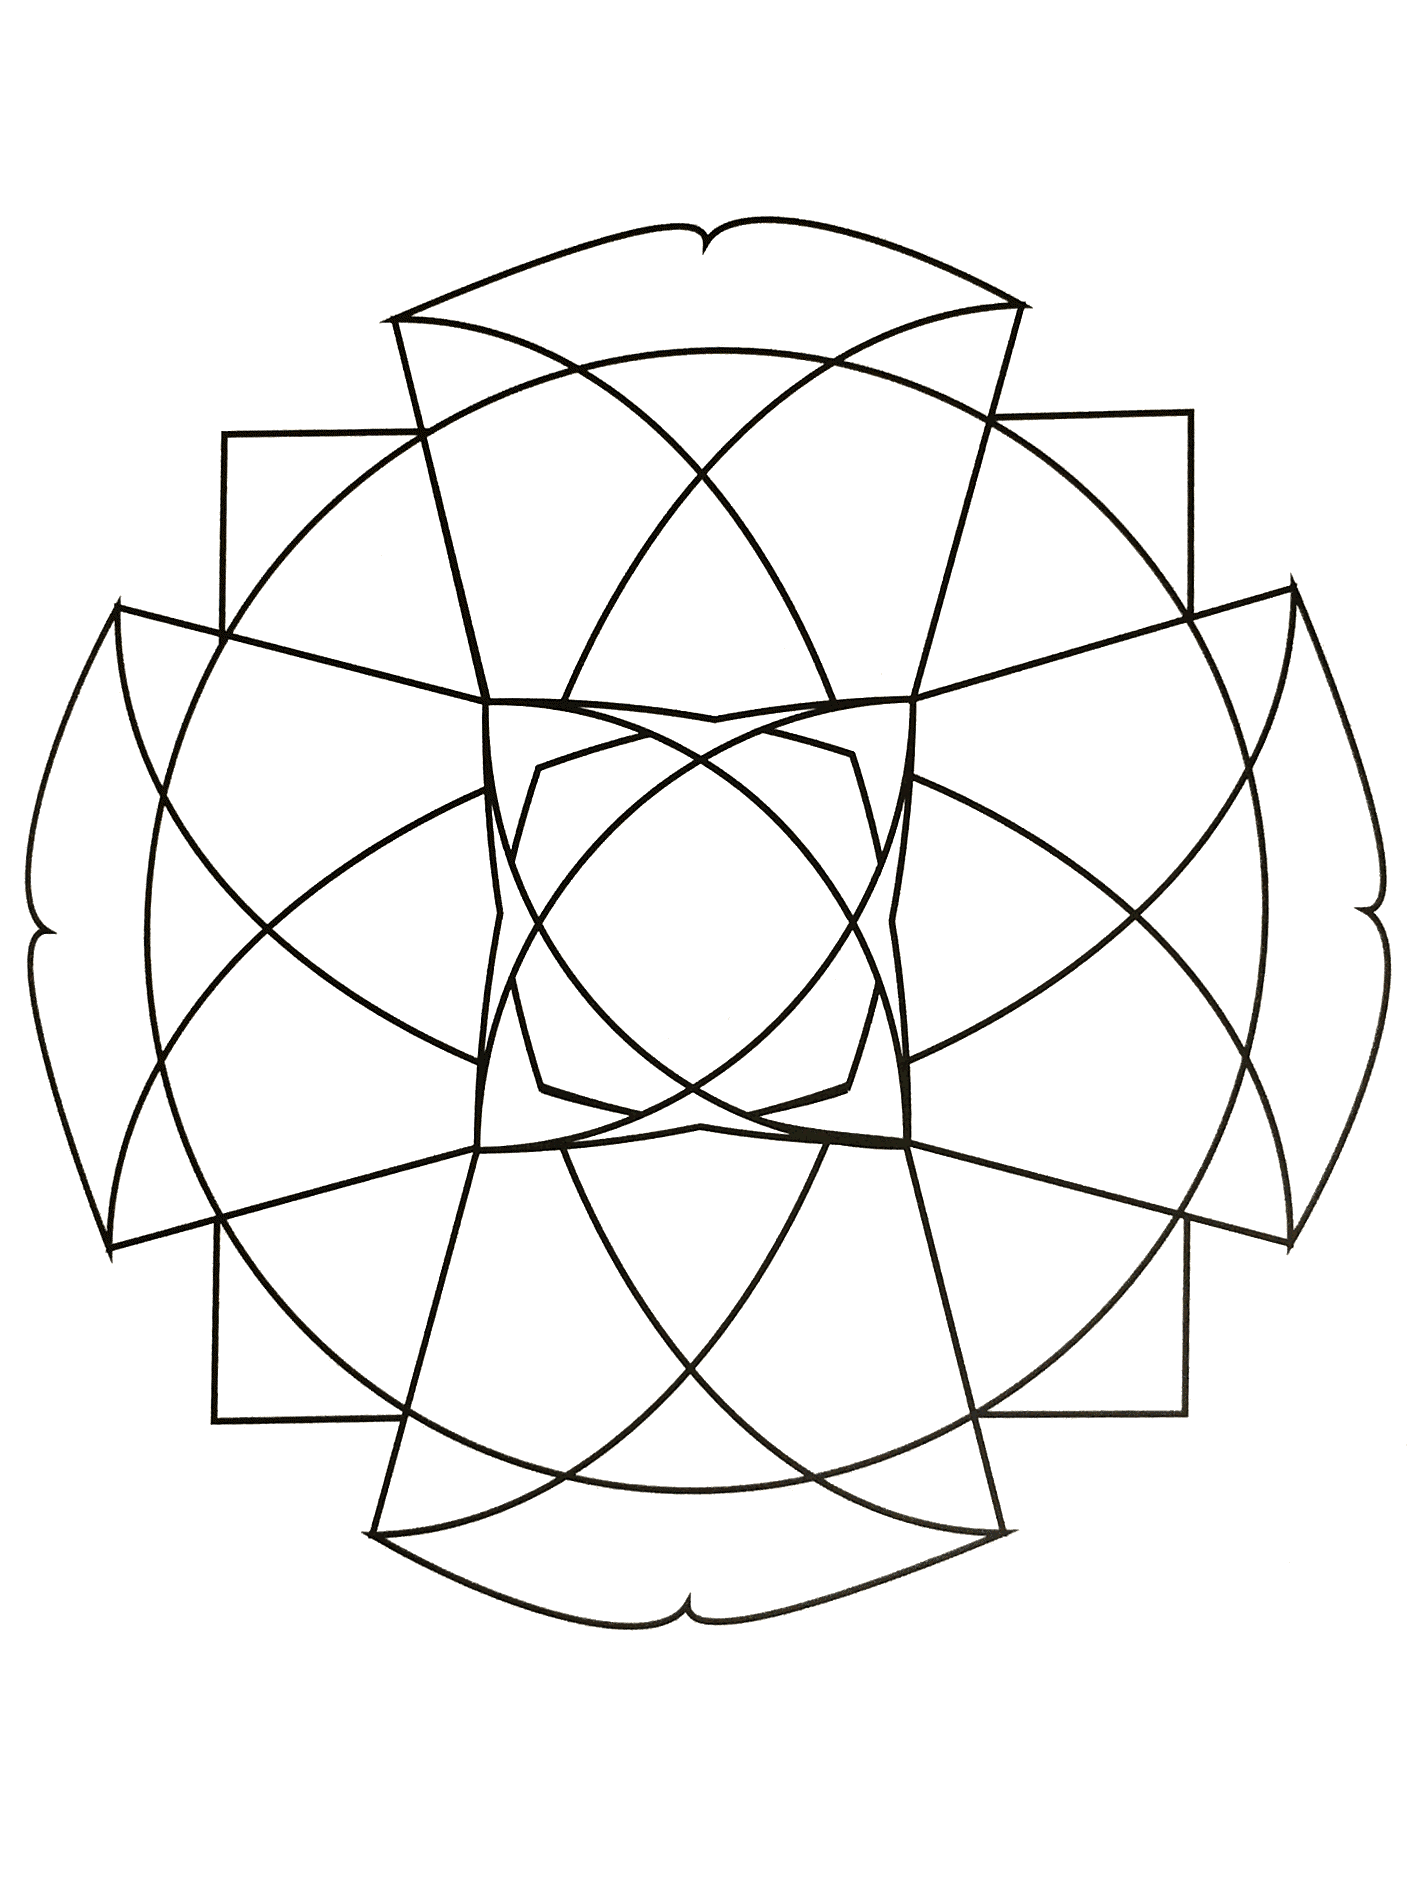 Mandala à imprimer représentant une grande croix ainsi que d'autres formes géométrique (triangle, losange...).